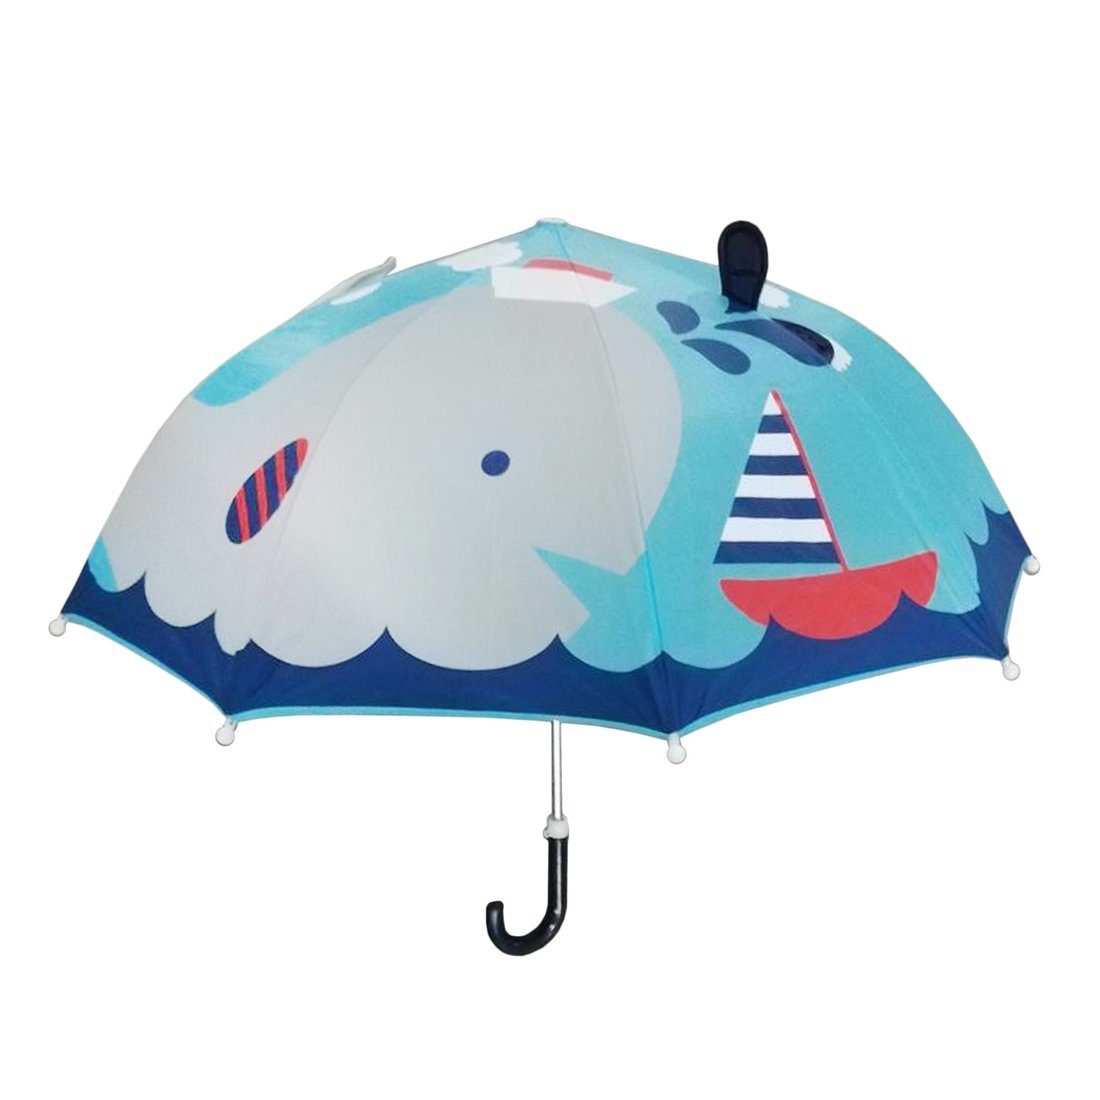 Зонт детский Кит 46 см